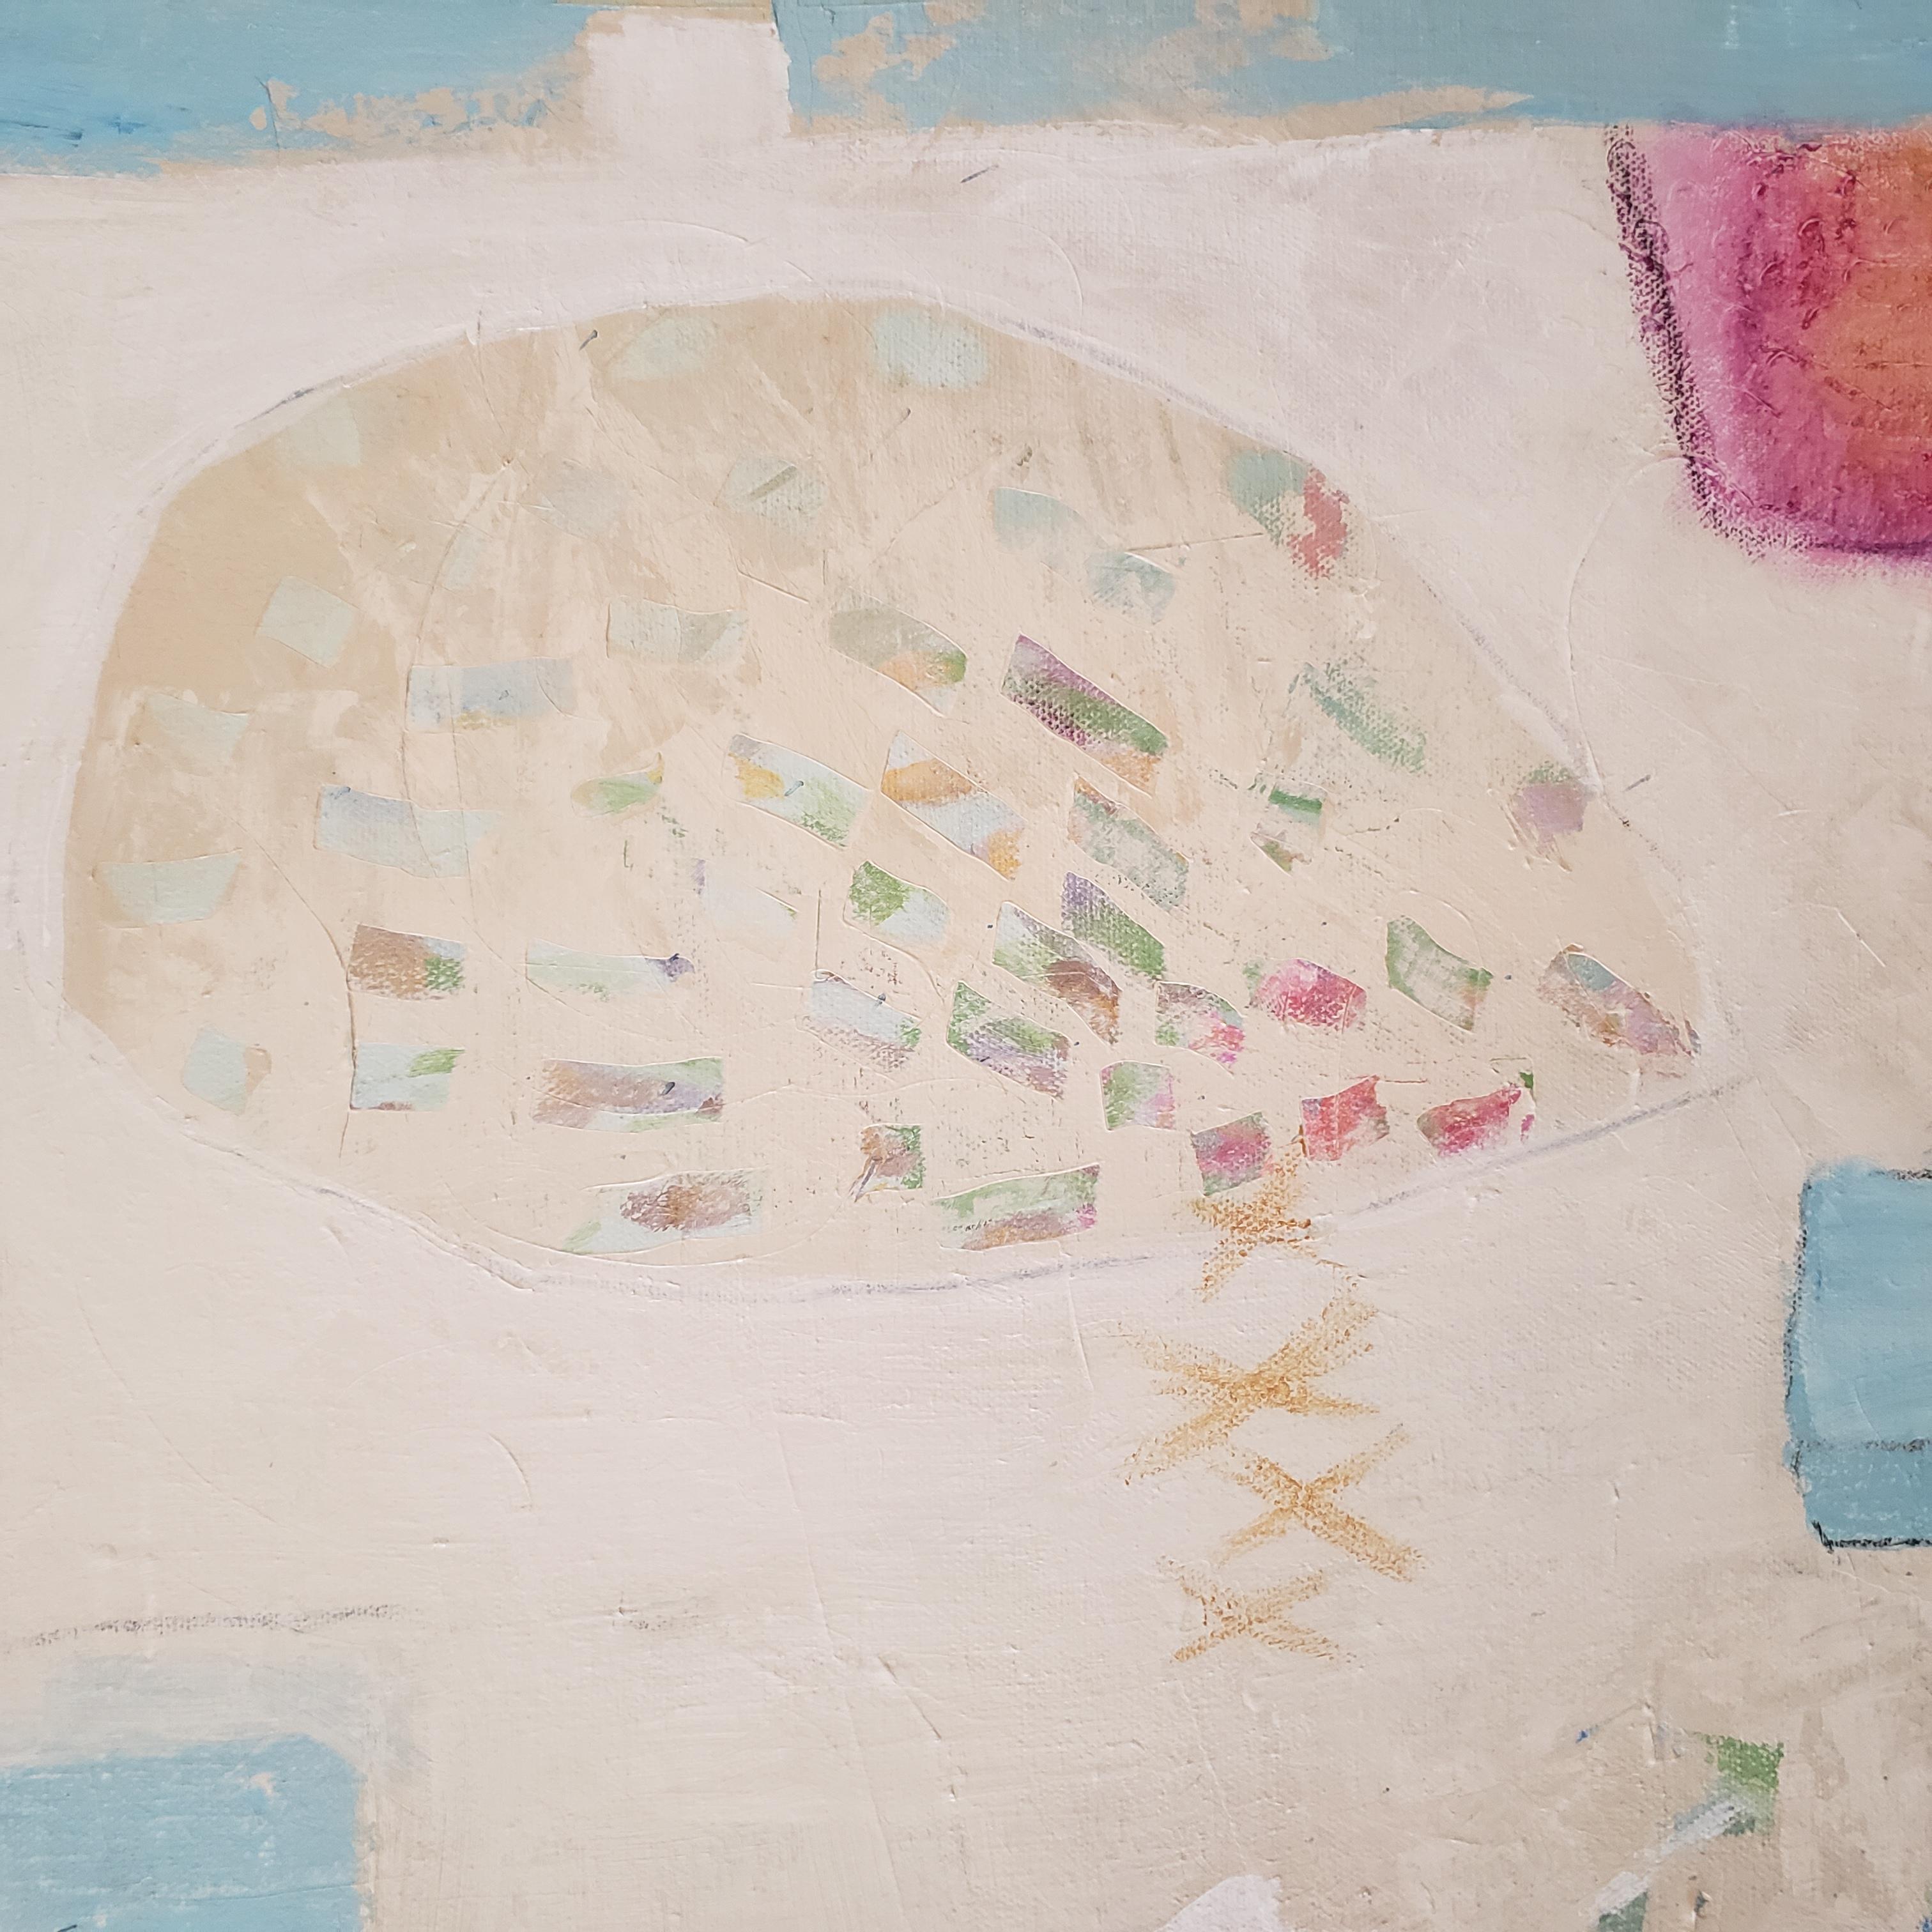  Random Thoughts est une peinture abstraite contemporaine de l'artiste texane Eleanor McCarthy.  Eleanor McCarthy utilise des peintures acryliques et des crayons de couleur pour créer les couleurs apaisantes de ses nouvelles peintures contemporaines